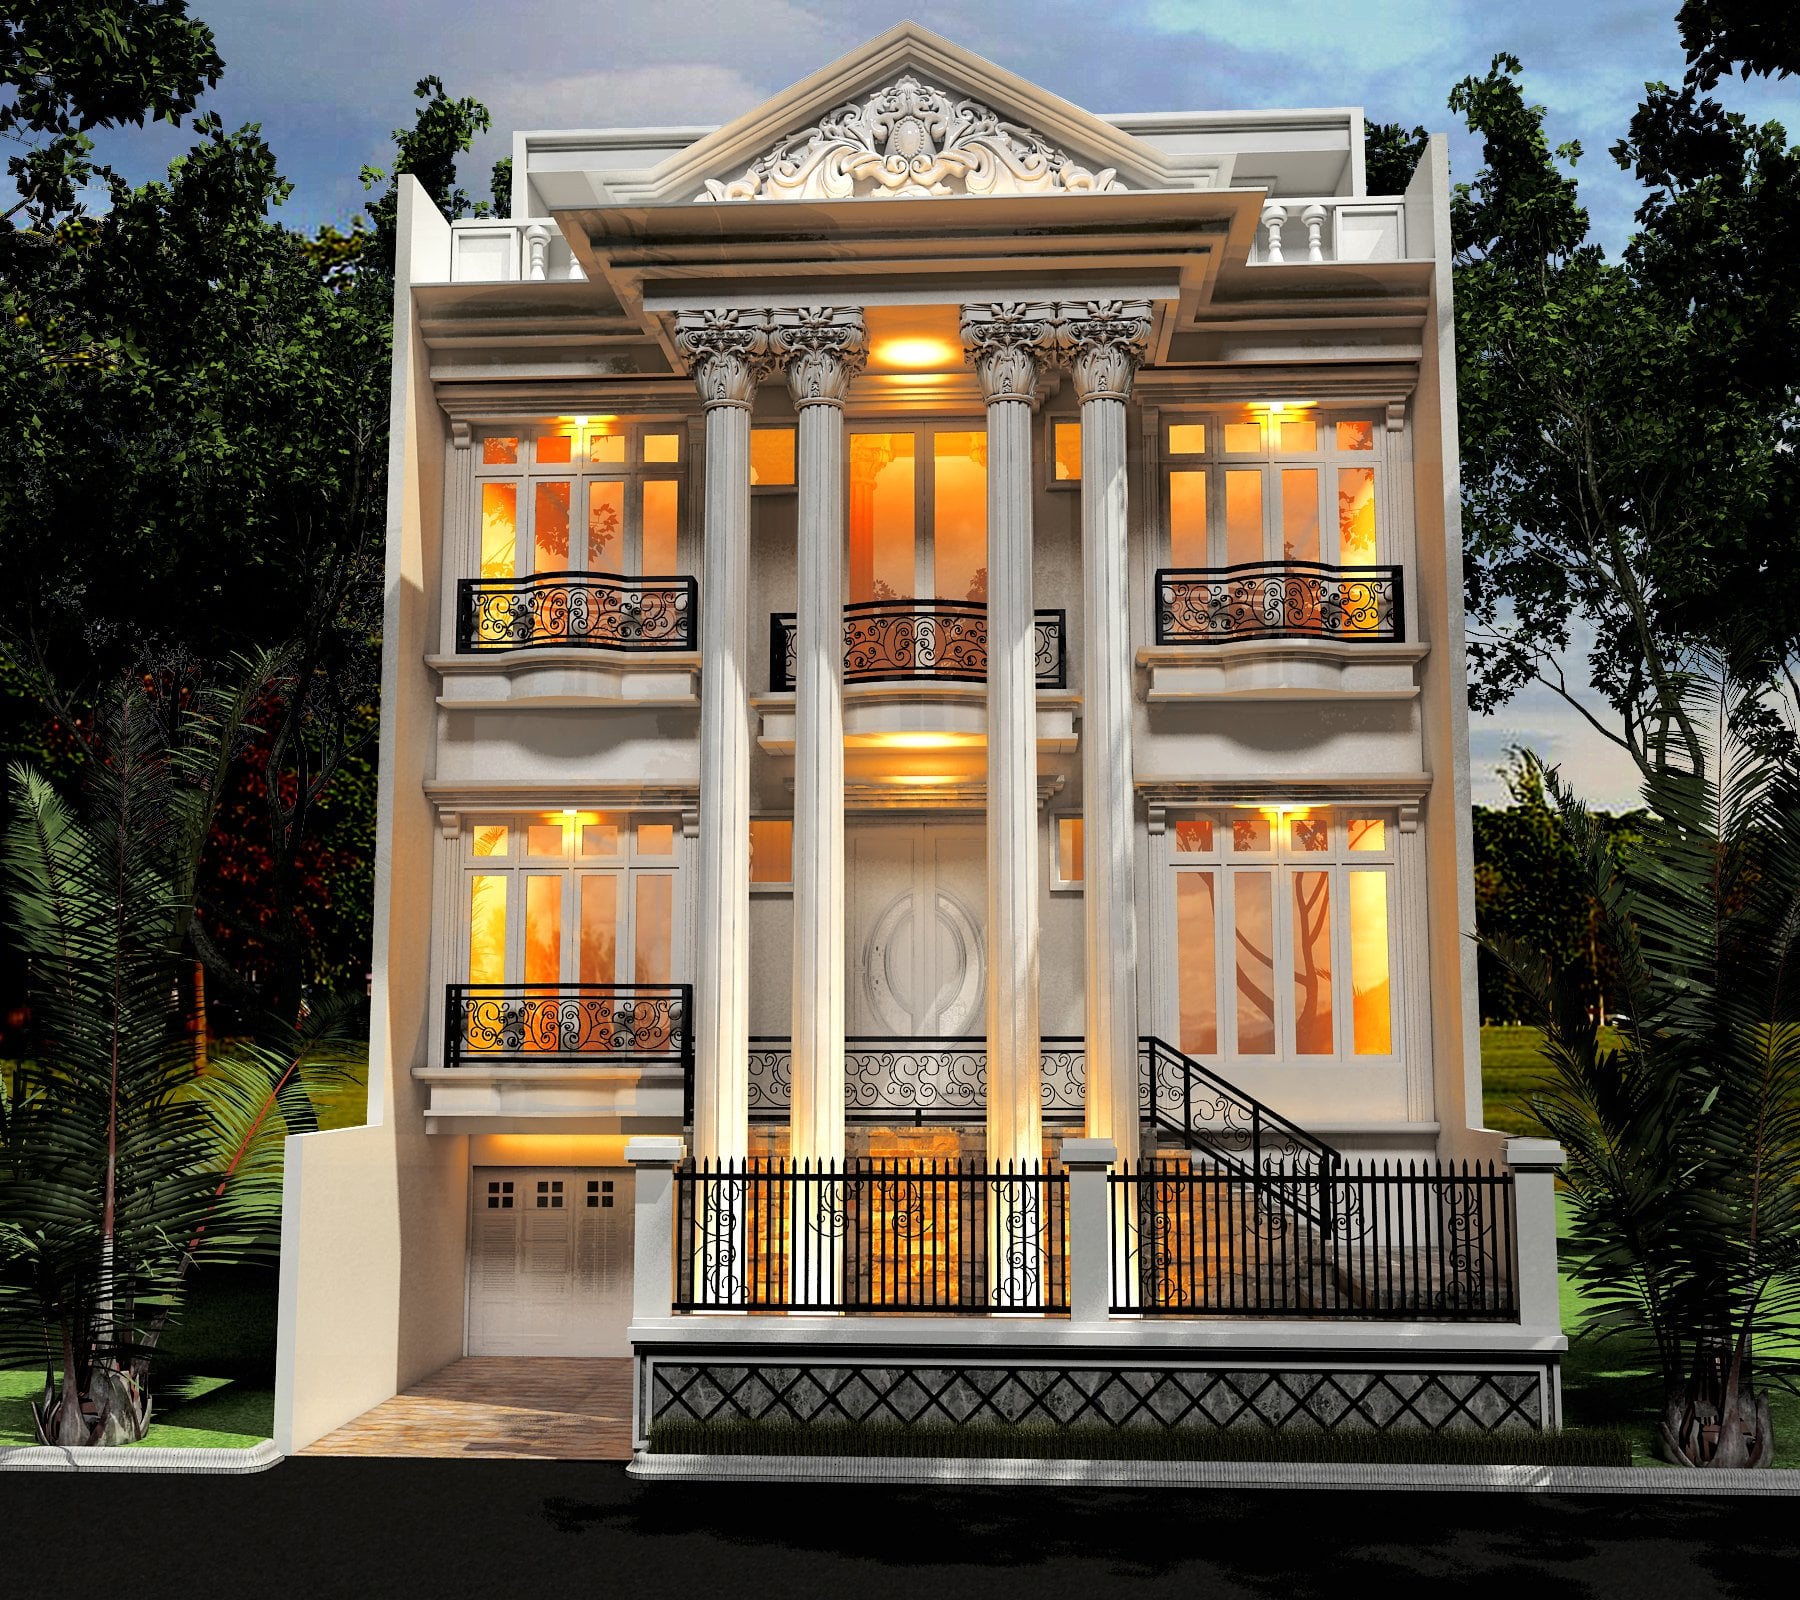 Mewah Desain Rumah Mewah Terbaru 78 Tentang Ide Desain Interior Untuk Desain Rumah dengan Desain Rumah Mewah Terbaru